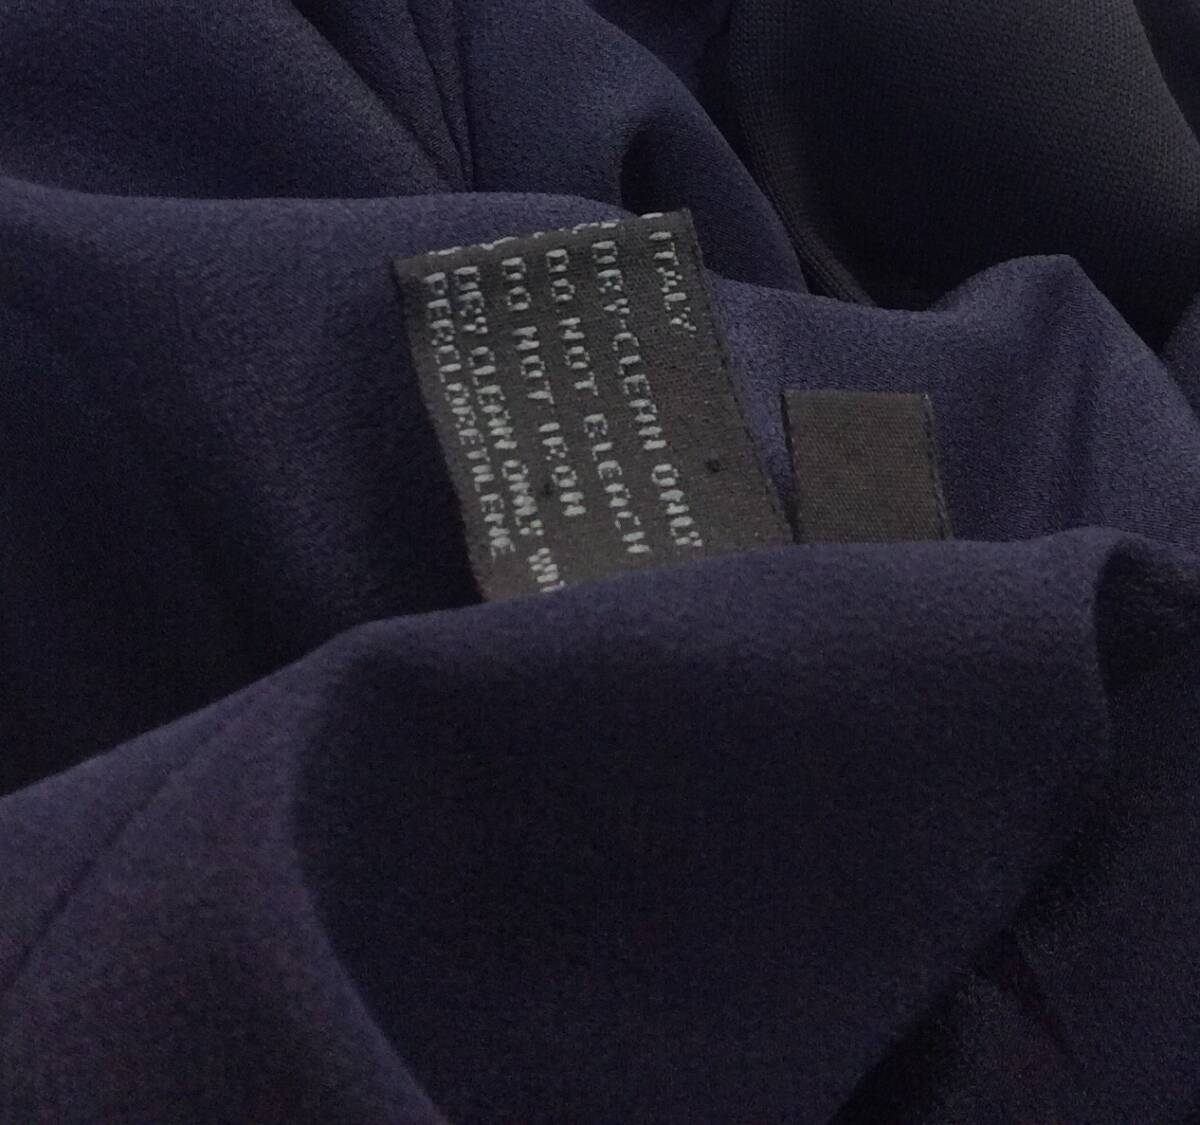 PRADA Prada ITALY производства tailored jacket искусственный шелк / нейлон темный темно-синий серия женский 44 (ma)